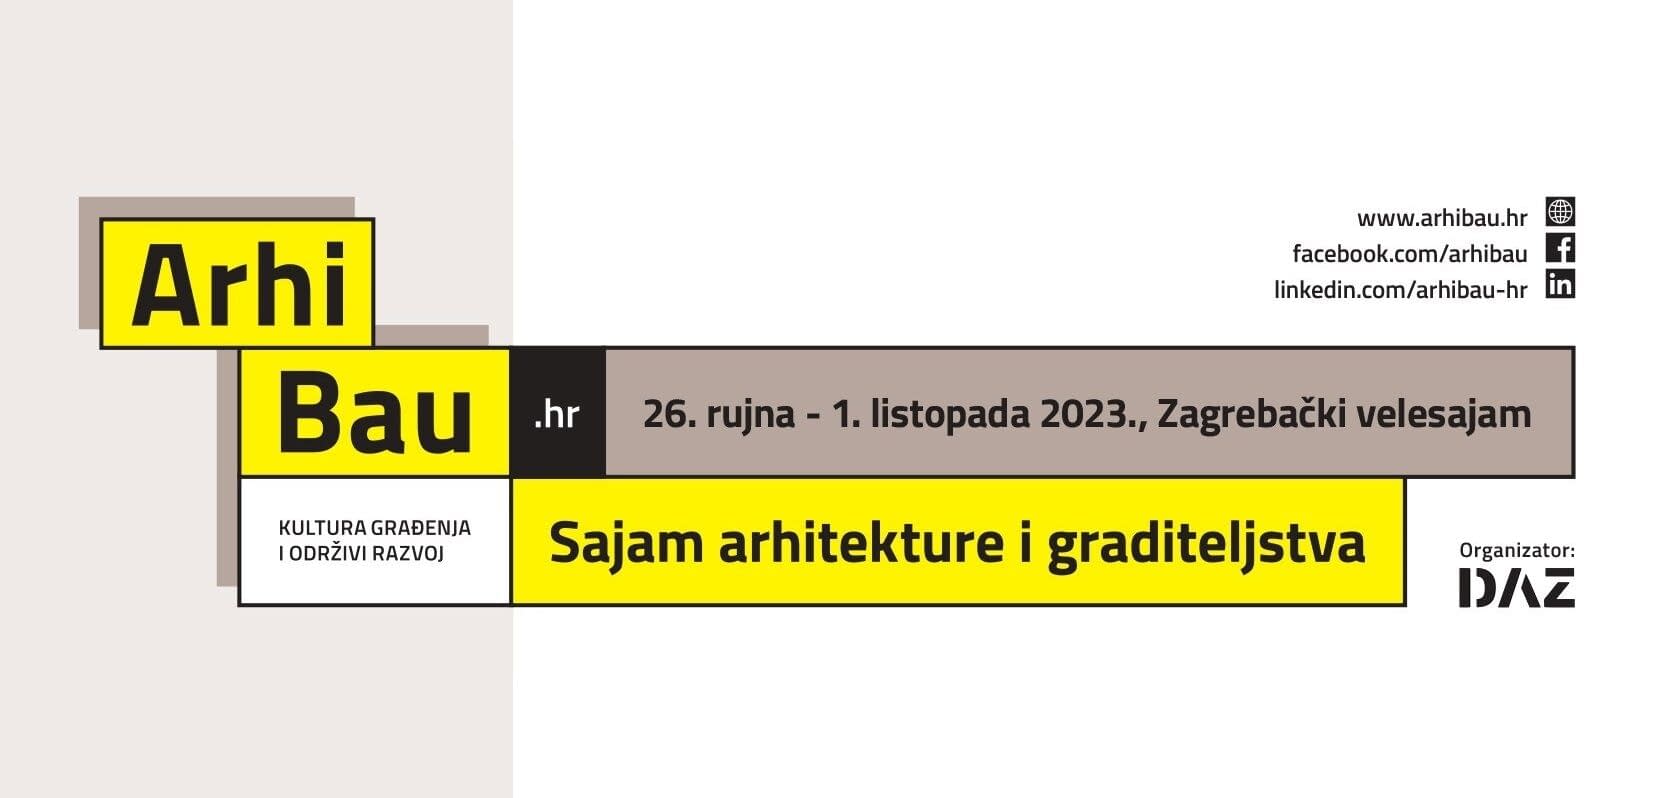 Predstavljamo ArhiBau.hr 2023 – Najveći sajam arhitekture  i graditeljstva u regiji